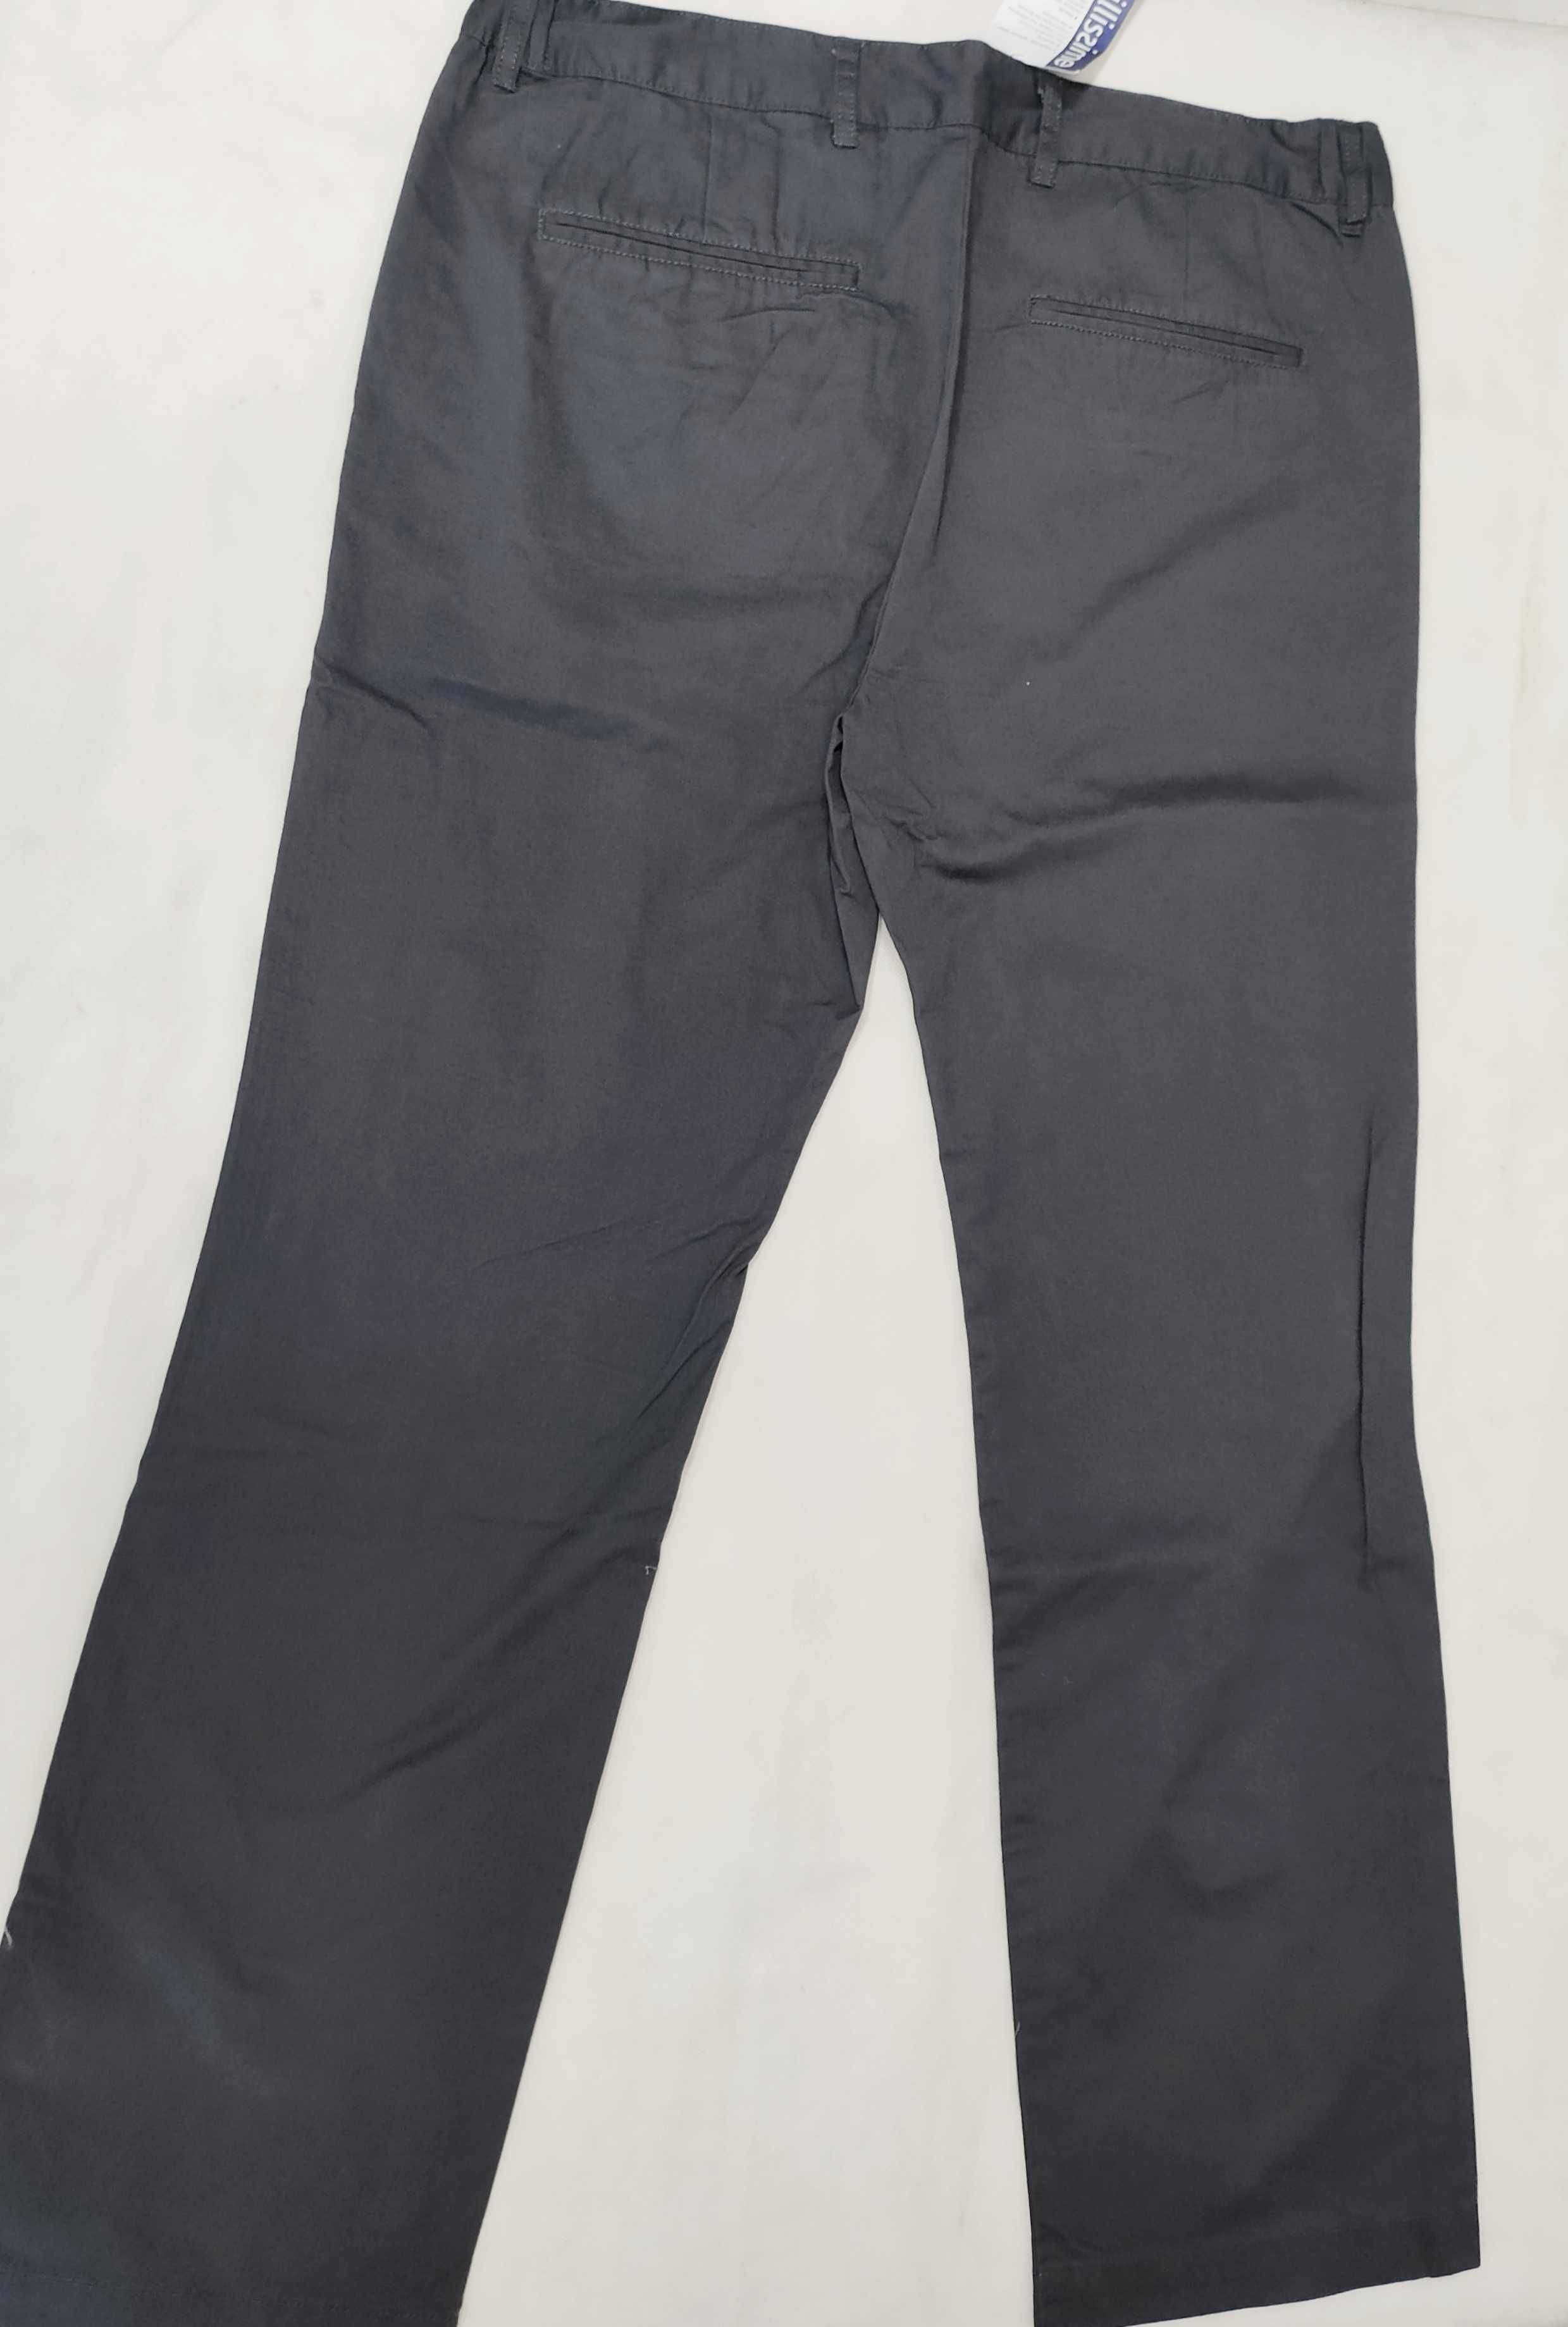 Spodnie męskie materiałowe bawełniane 54 XL SM0044C TAILISIME